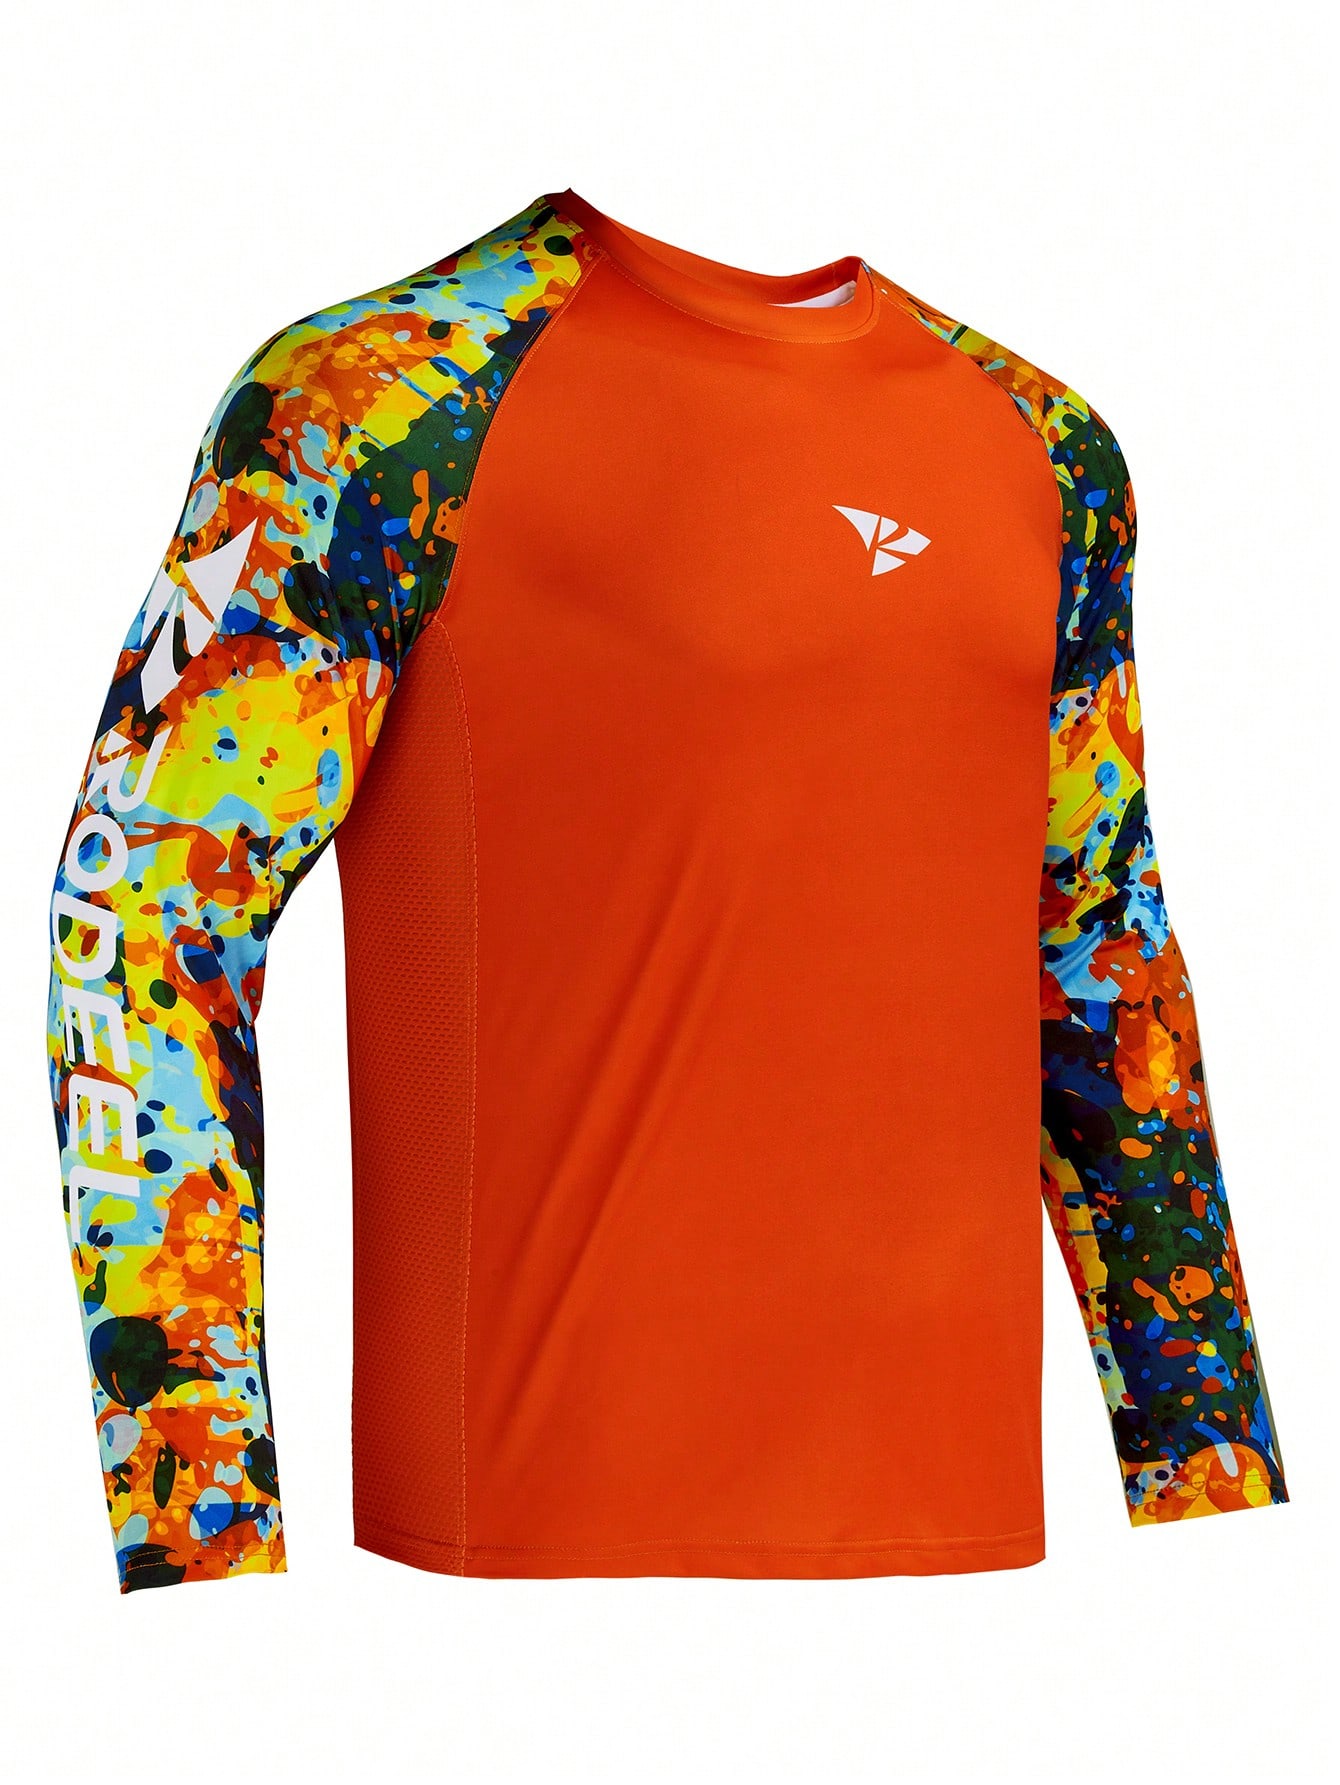 RODEEL Мужская рубашка с защитой от солнца, апельсин одежда daiwa футболка для рыбалки мужская дышащая быстросохнущая одежда для рыбалки daiwa летняя спортивная рубашка с коротким рукавом футбо